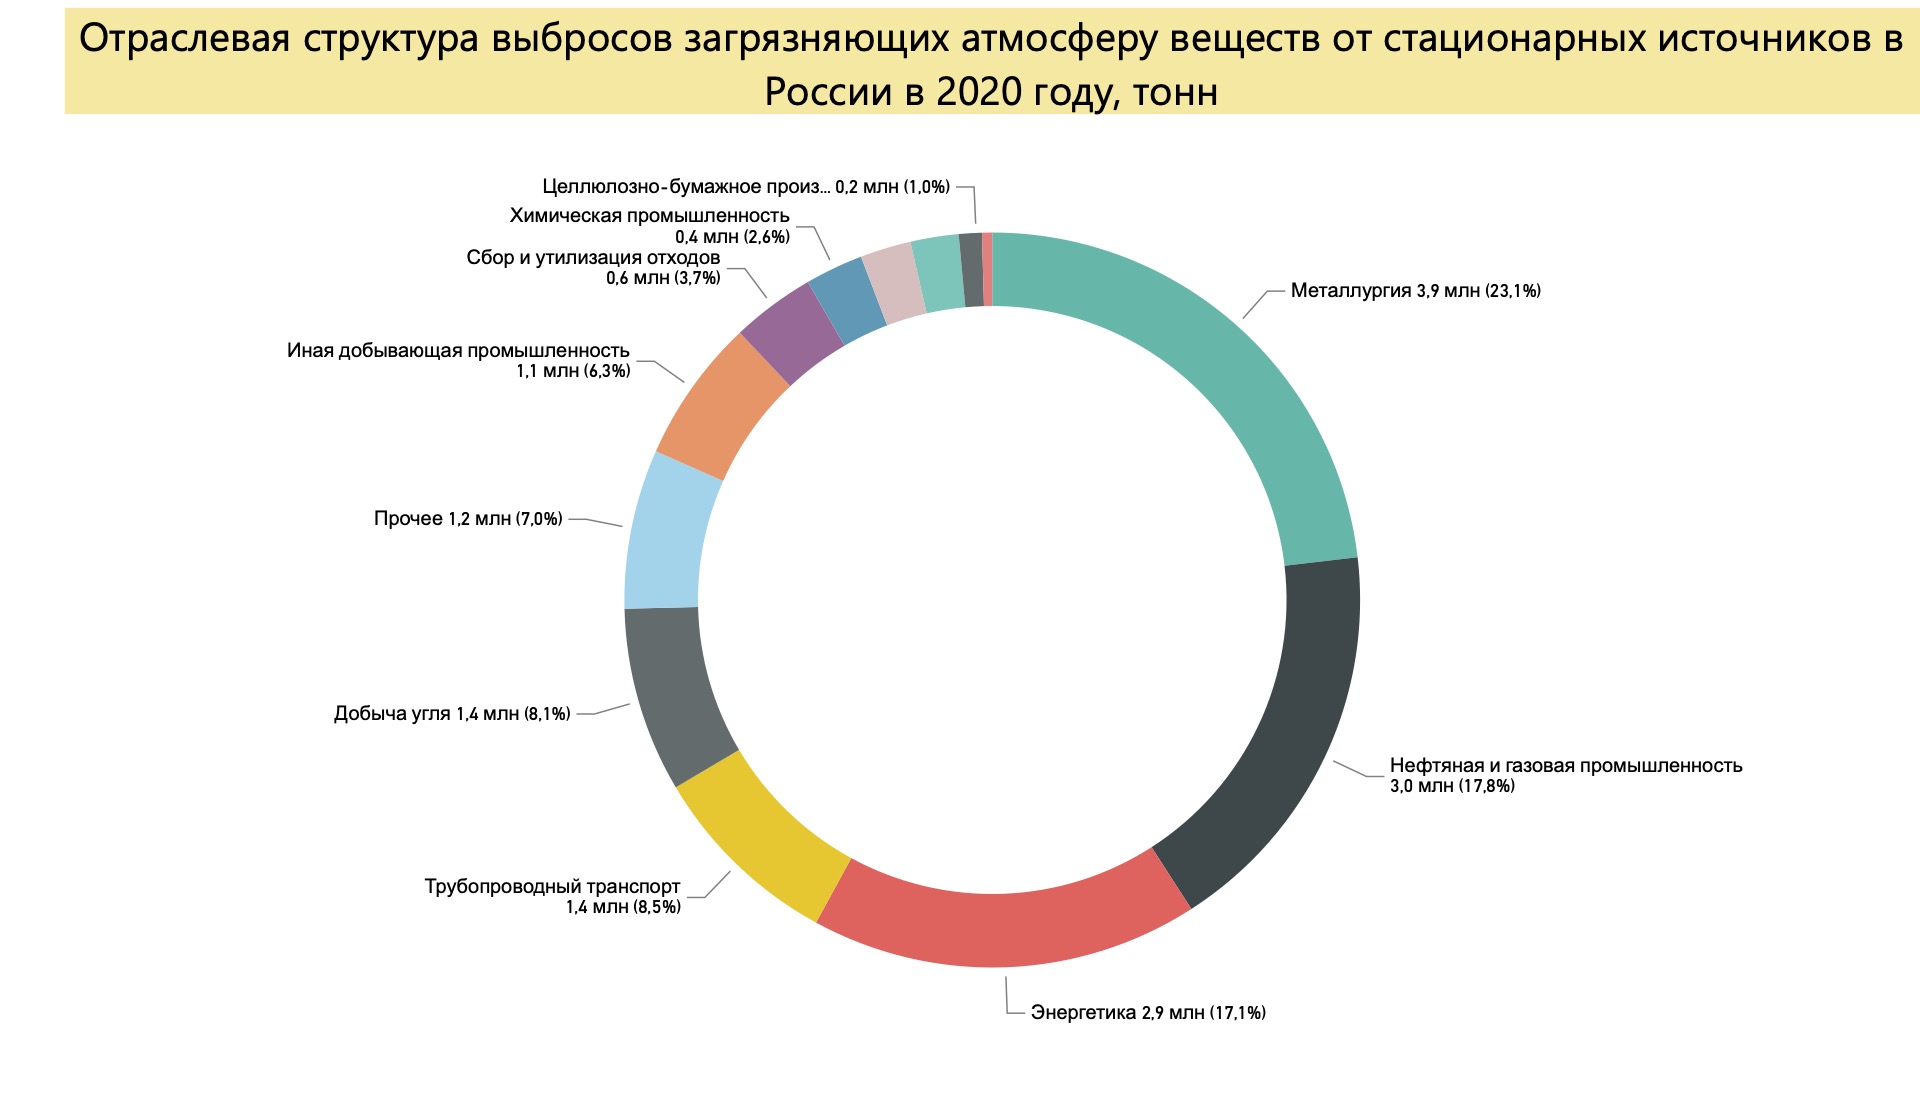 Отраслевая структура выбросов загрязняющих атмосферу веществ от стационарных источников в России. Источник: расчет автора по данным Росприроднадзора